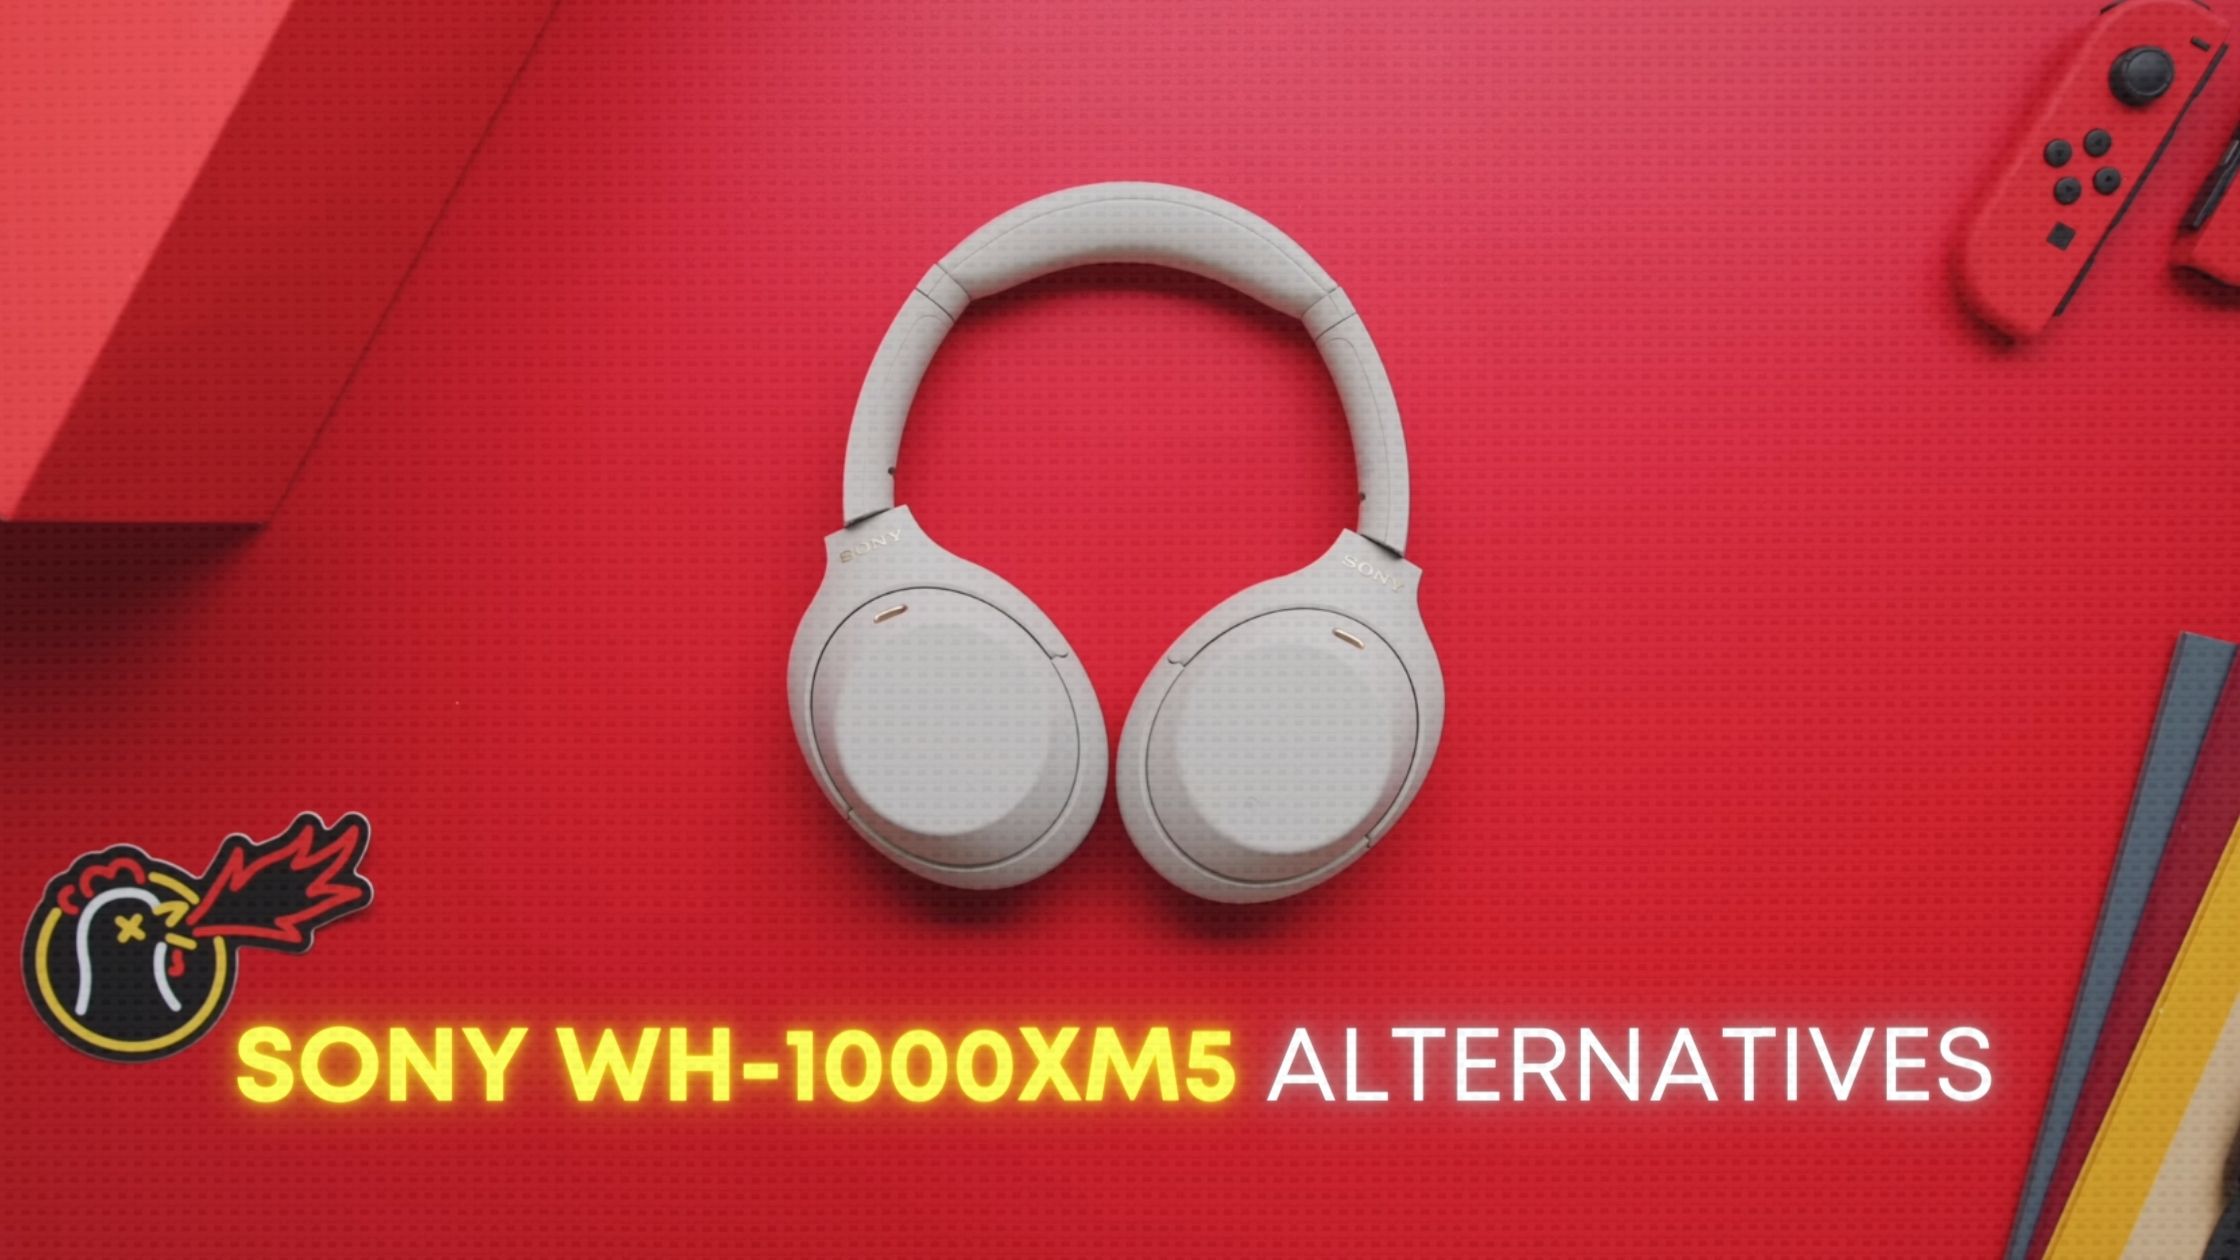 Sony WH-1000XM5 Alternatives